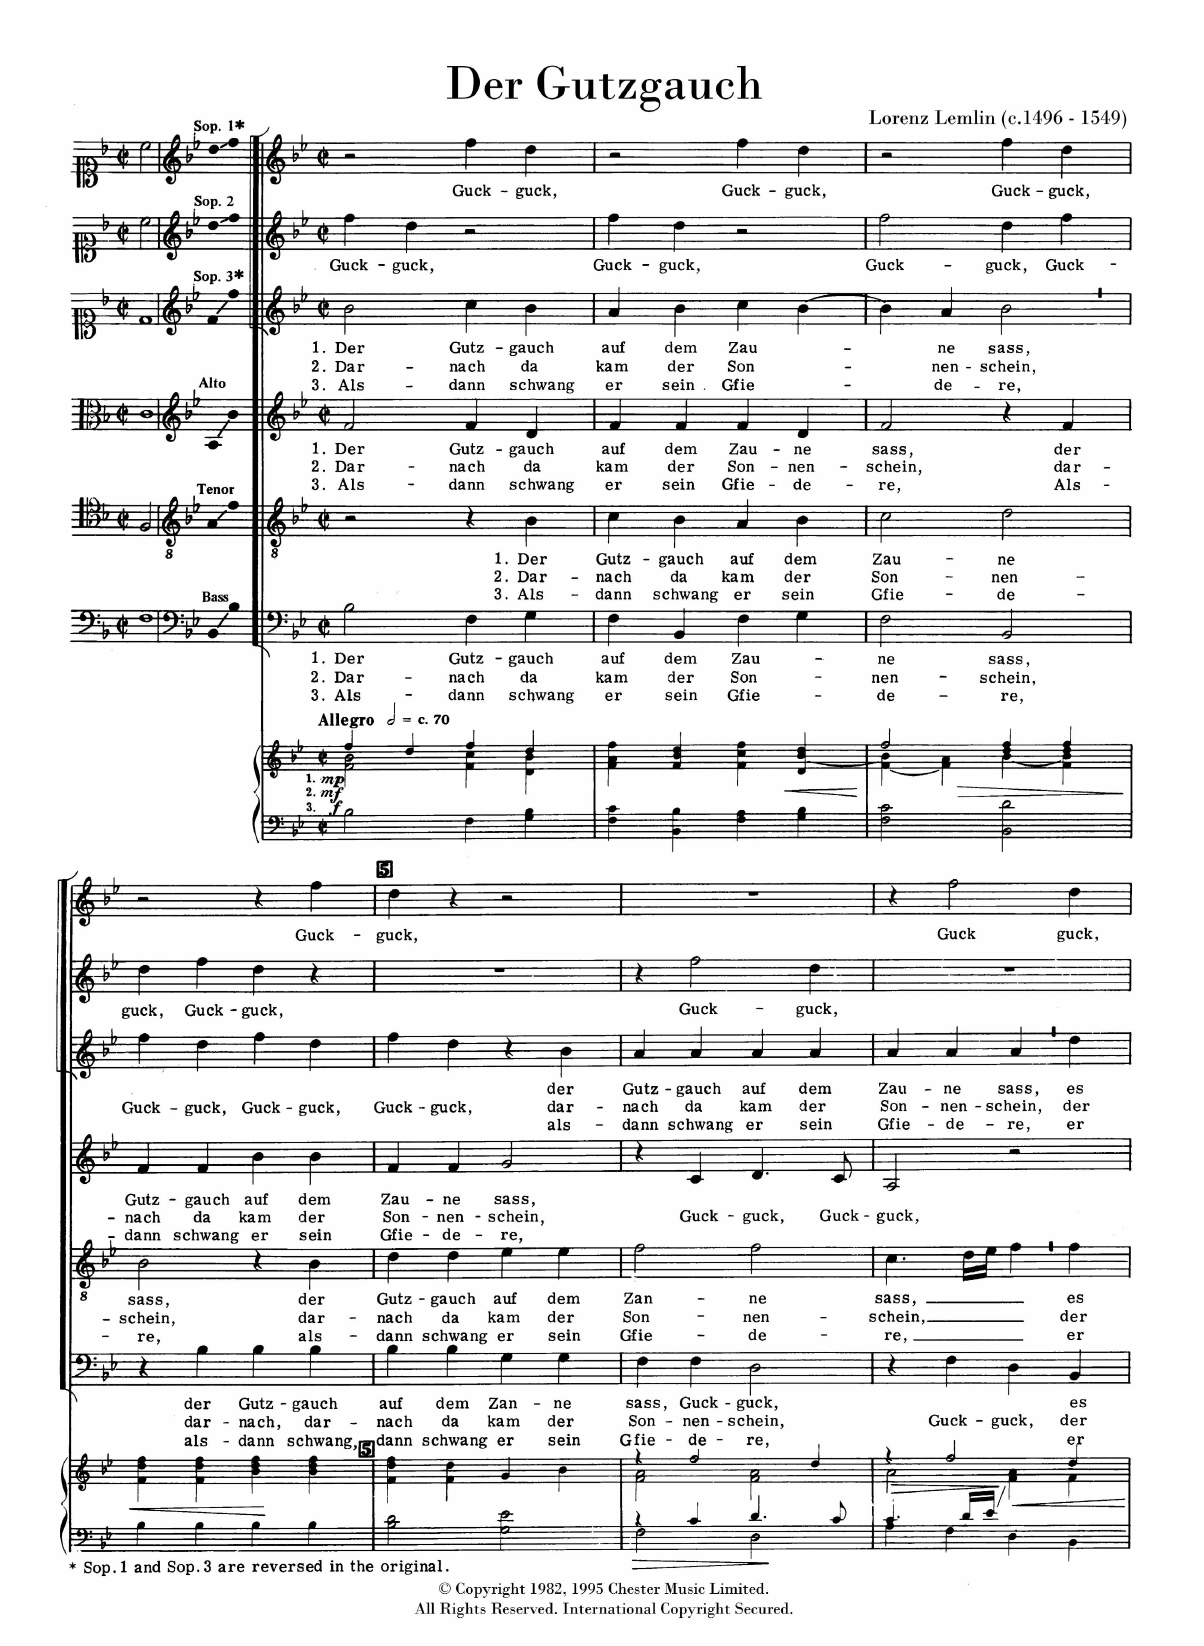 Lorenz Lemlin Der Gutzgauch sheet music notes and chords arranged for SATB Choir